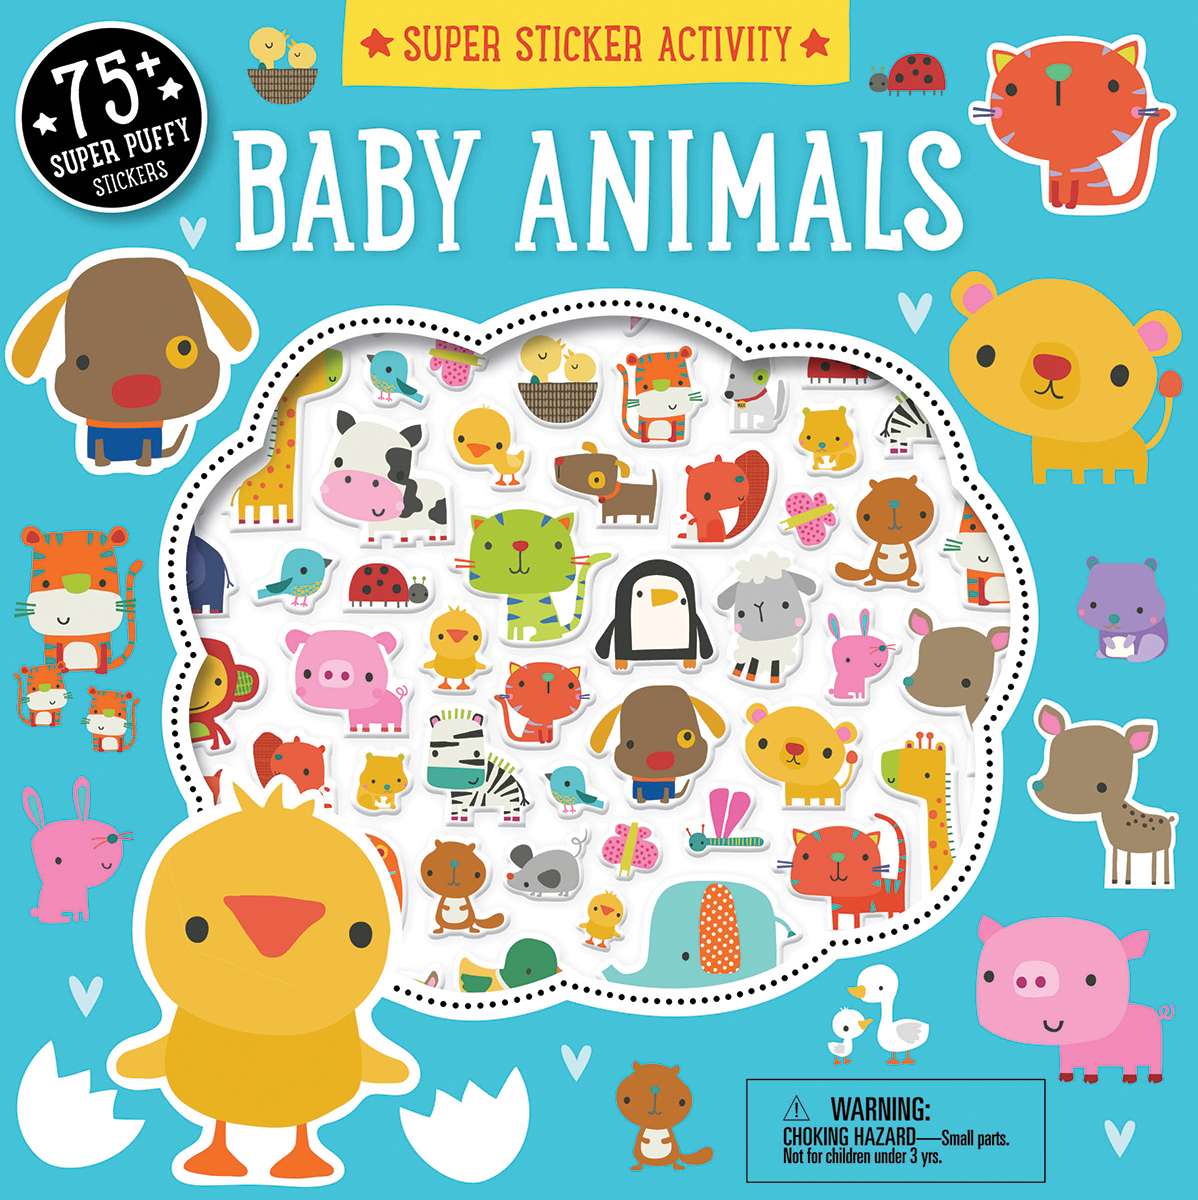 Super Sticker Activity Baby Animals_300